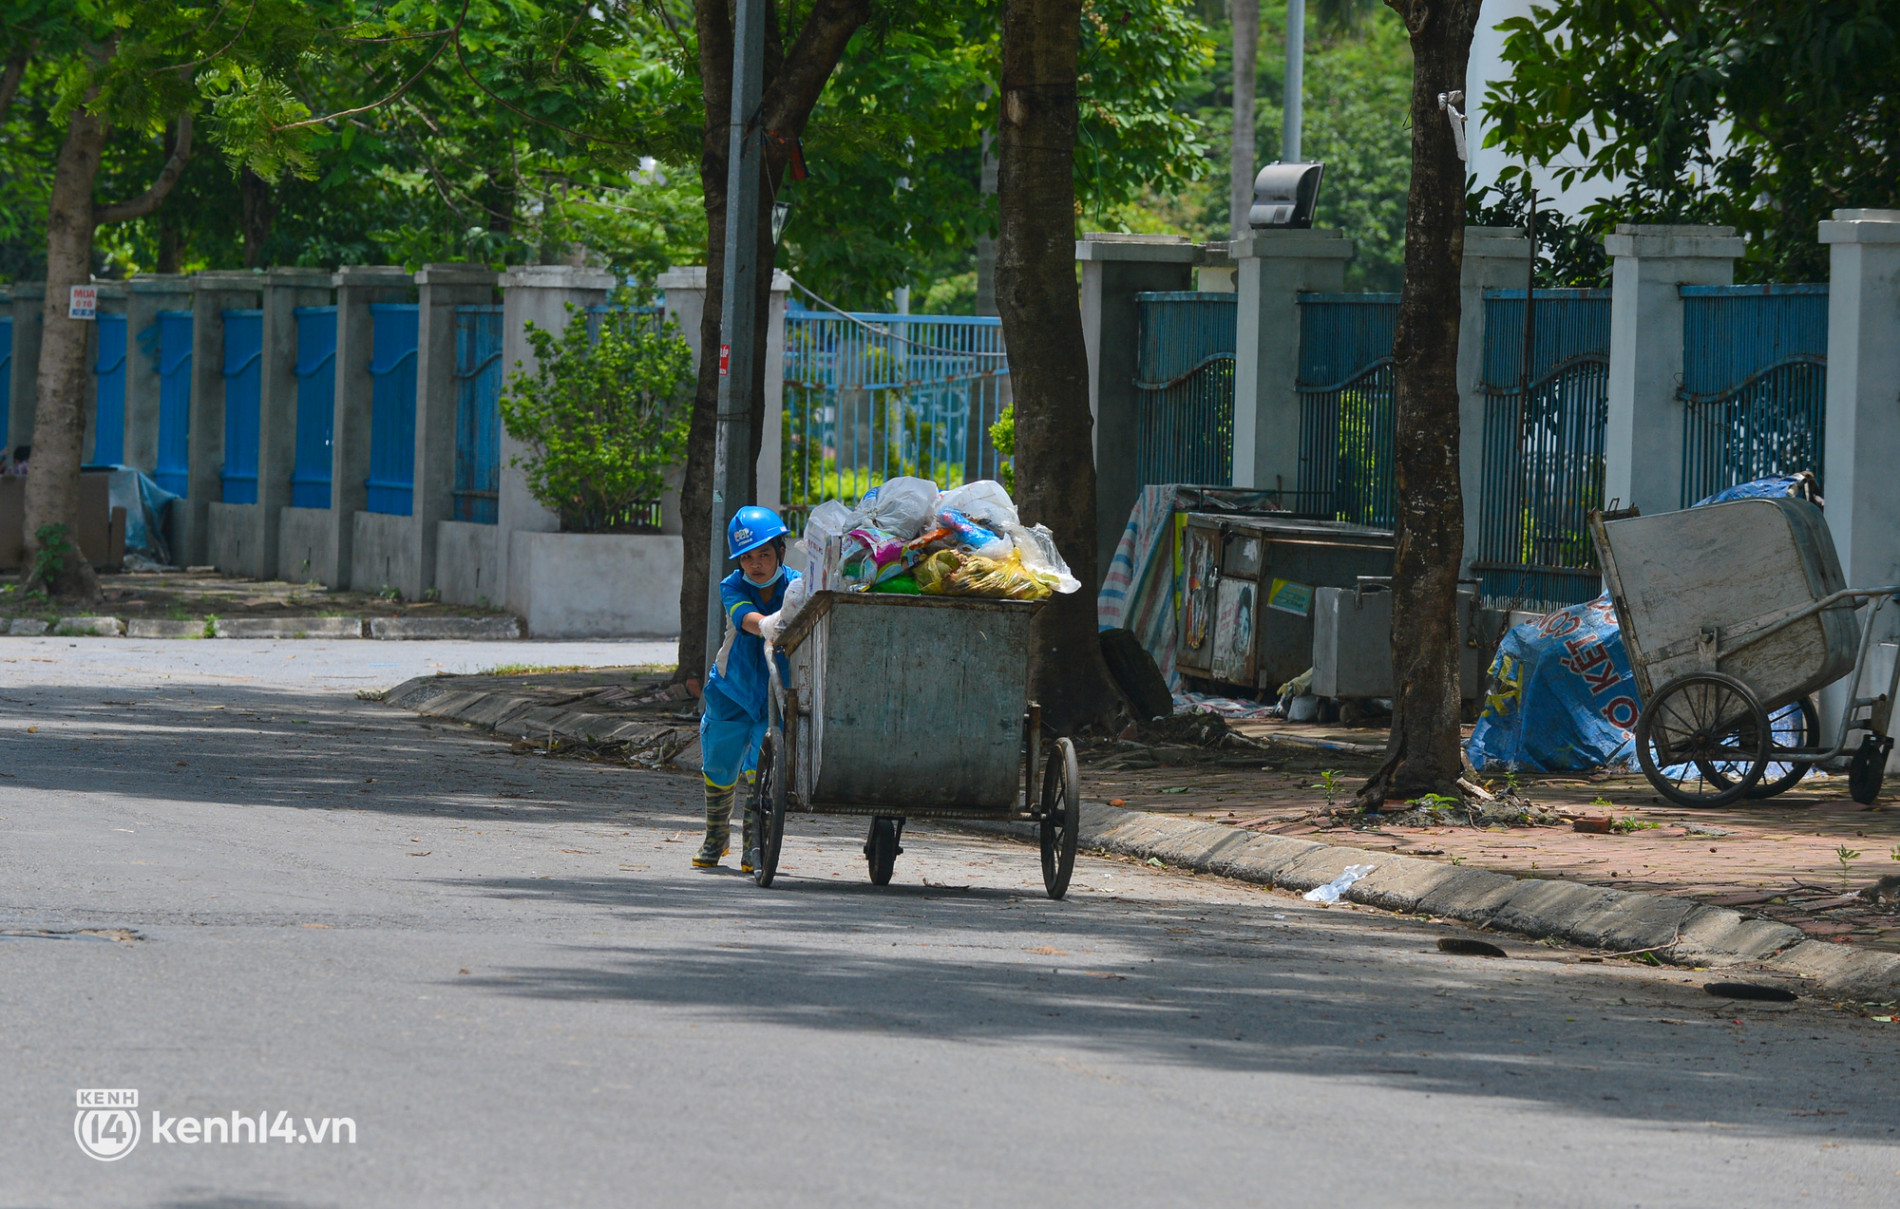 Nụ cười trở lại với những công nhân môi trường bị nợ lương ở Hà Nội: Đi làm vào ngày Tết được người dân chúc mừng, lì xì cũng hạnh phúc lắm - Ảnh 2.